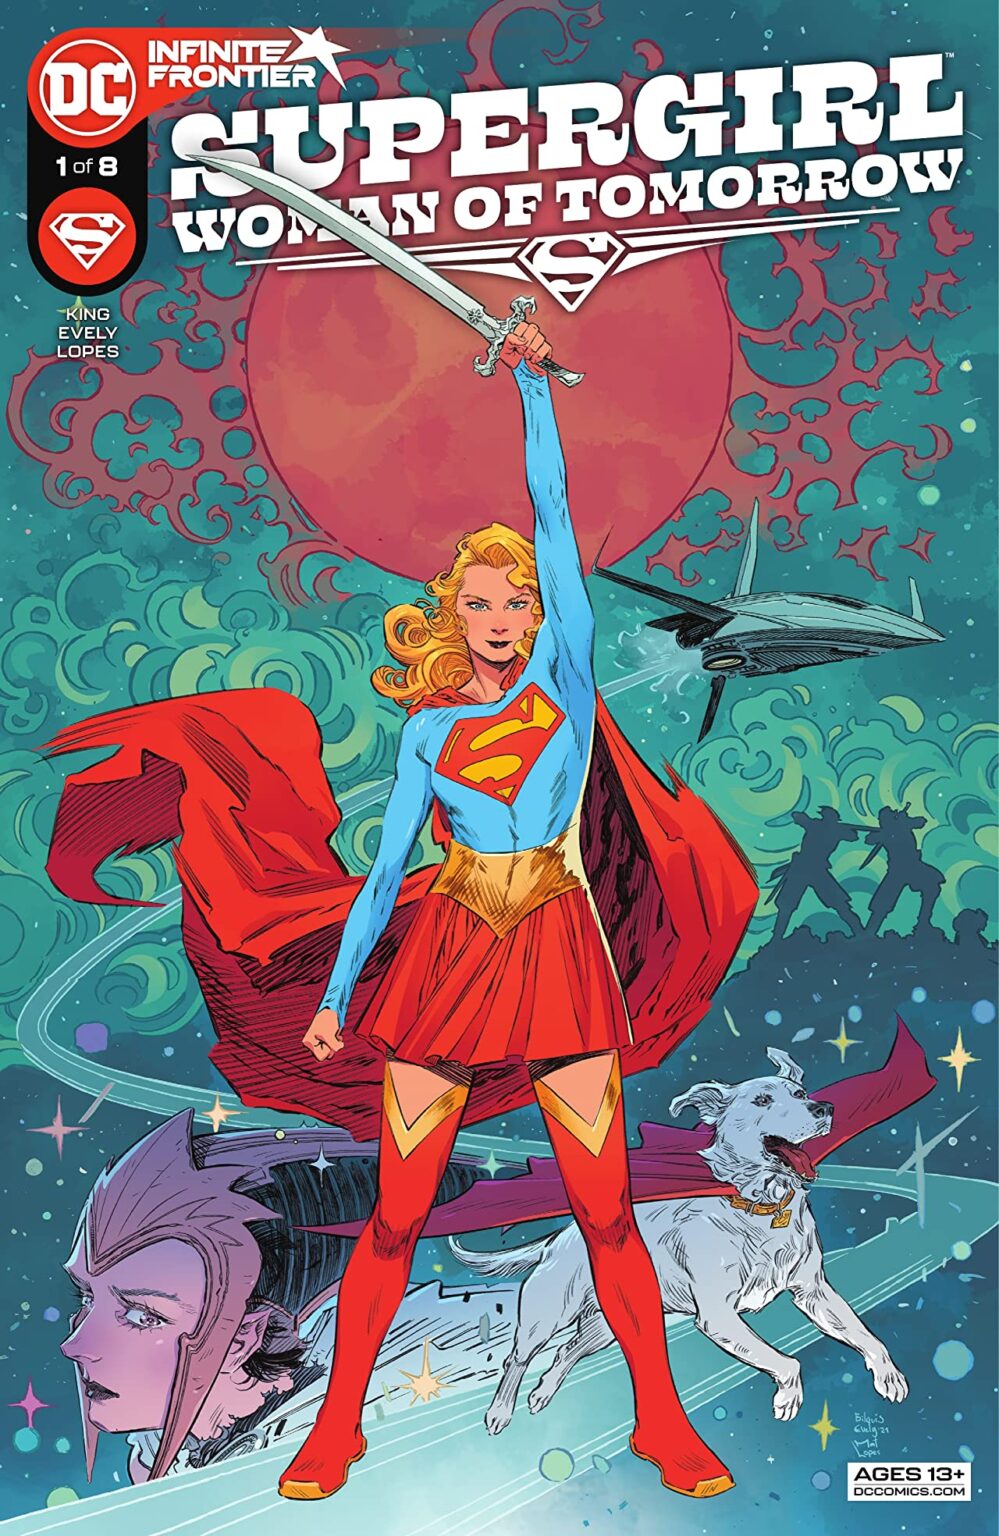 1050 - Les comics que vous lisez en ce moment - Page 19 Supergirl-999x1536